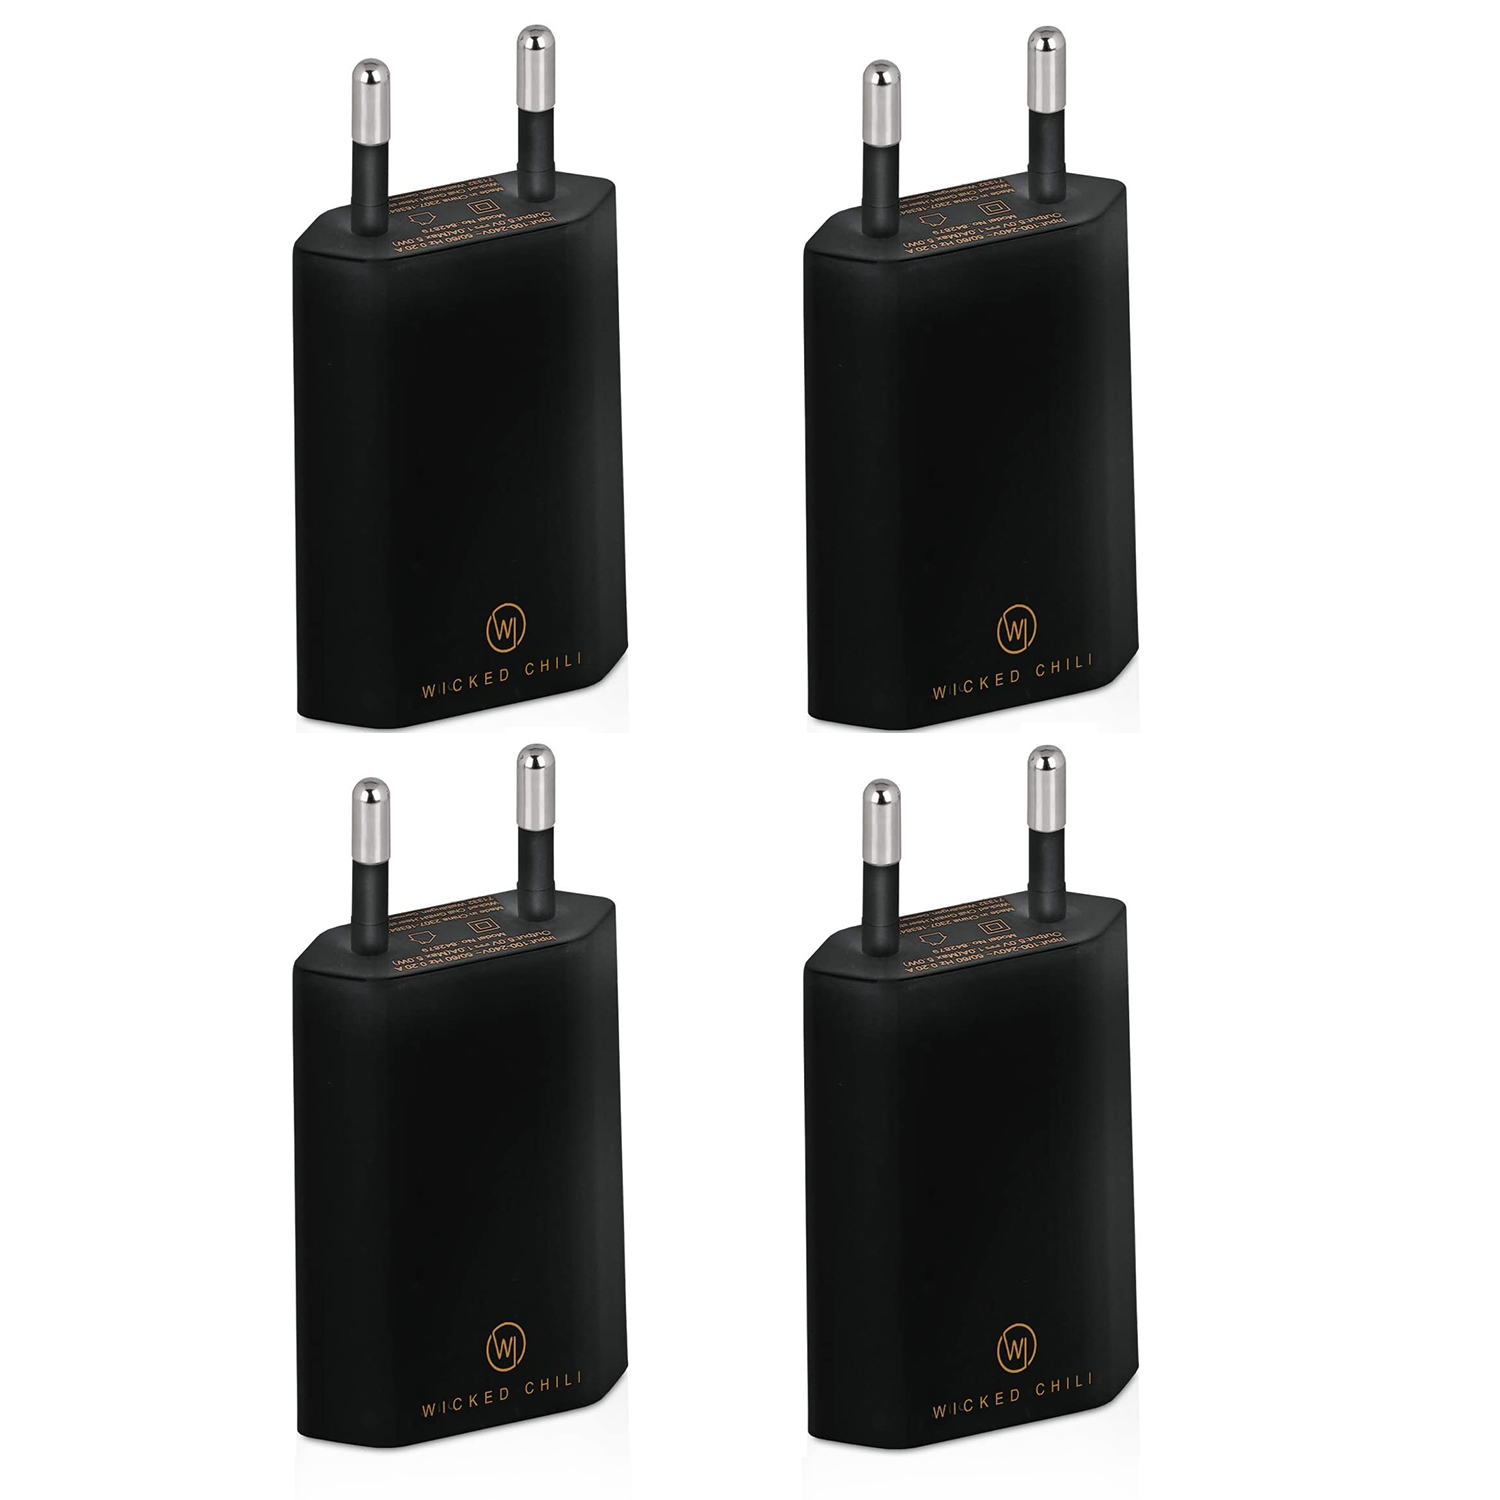 WICKED CHILI 4x USB Netzteil 1A, Adapter schwarz Smartphone und iPhone, USB Stecker Ladegerät Galaxy, Samsung 5V) Handy für